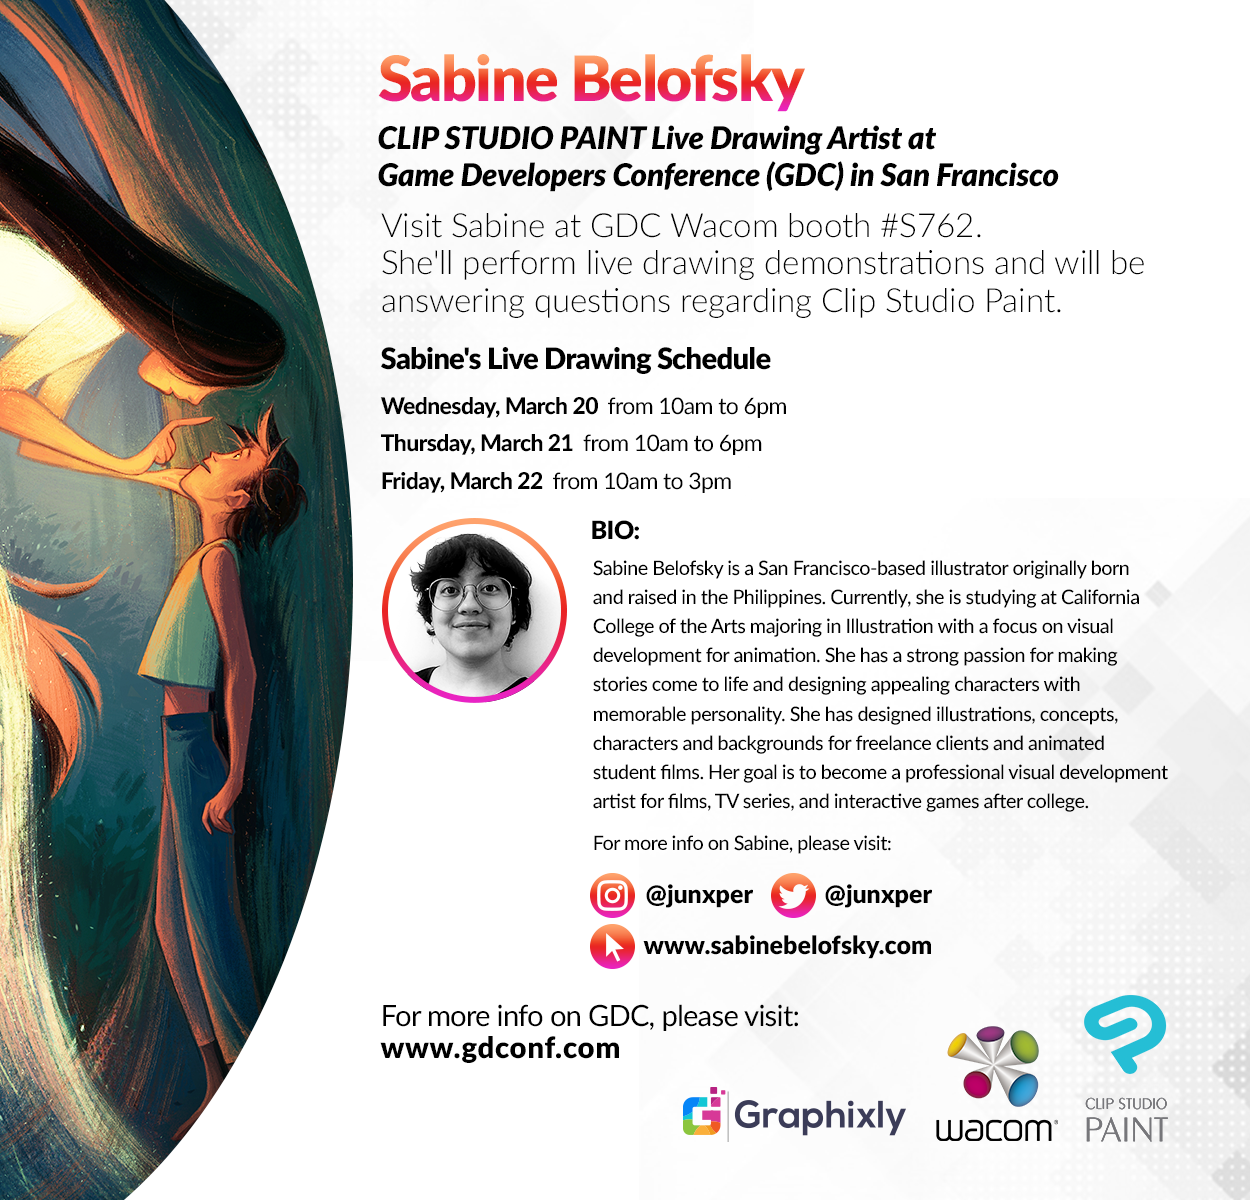 Game Developers Conference (GDC) - Live Drawing Artist - Sabine Belofsky